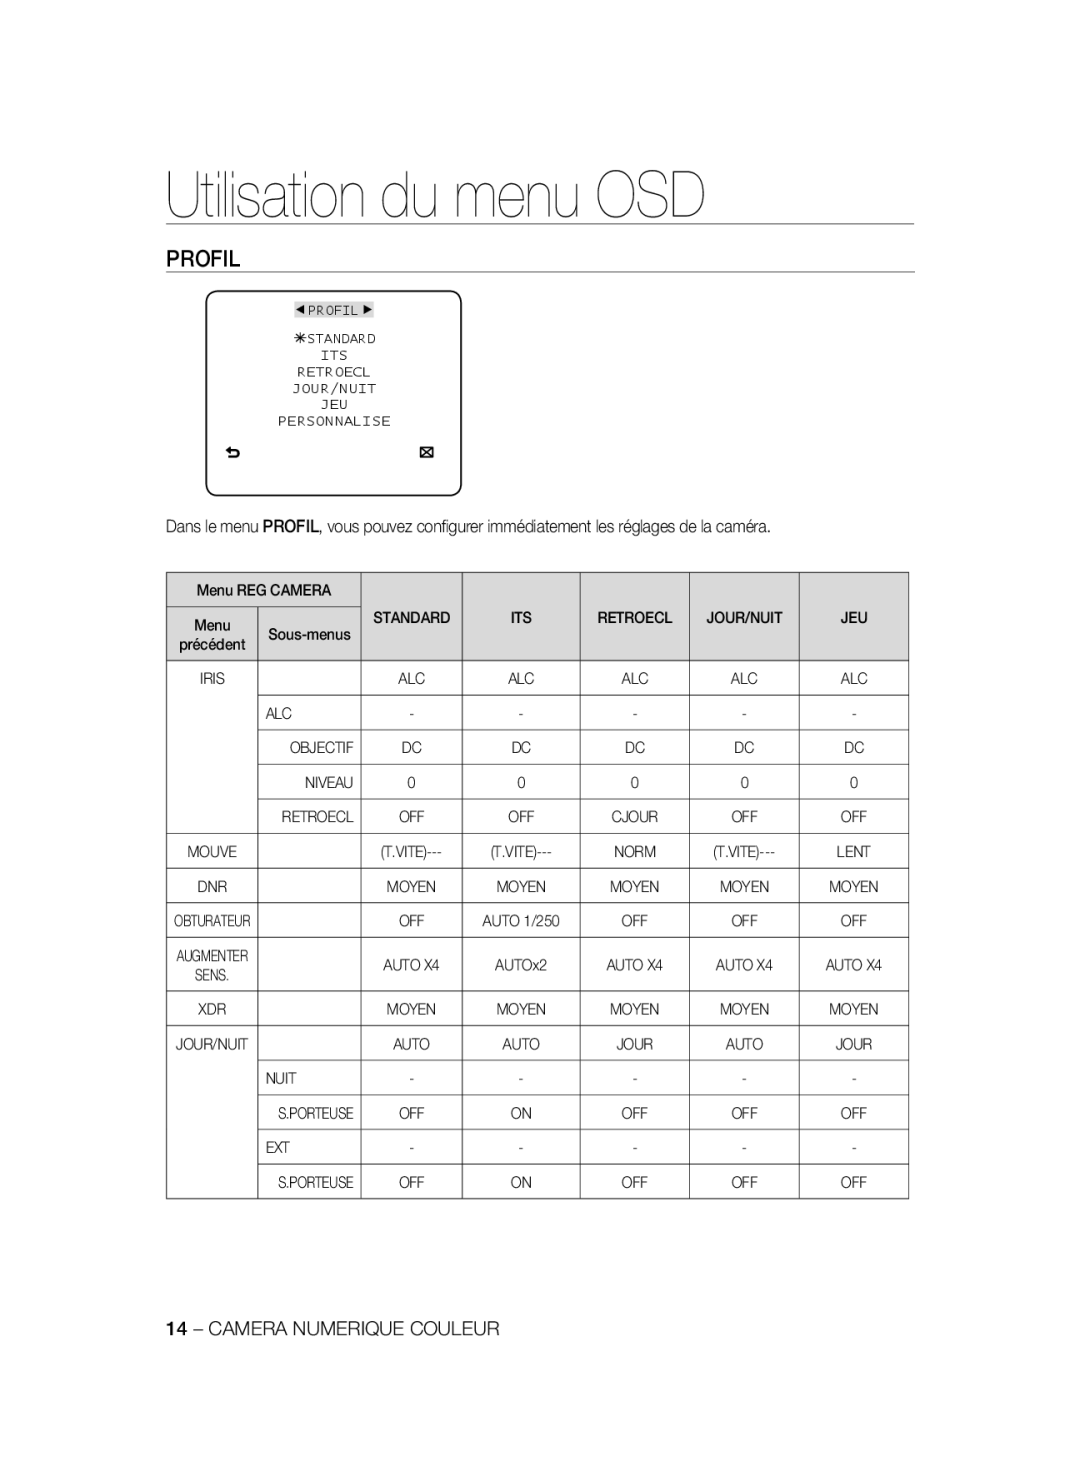 Samsung SCC-B2337P, SCC-B2037P manual Profil, Utilisation du menu OSD, Camera Numerique Couleur 